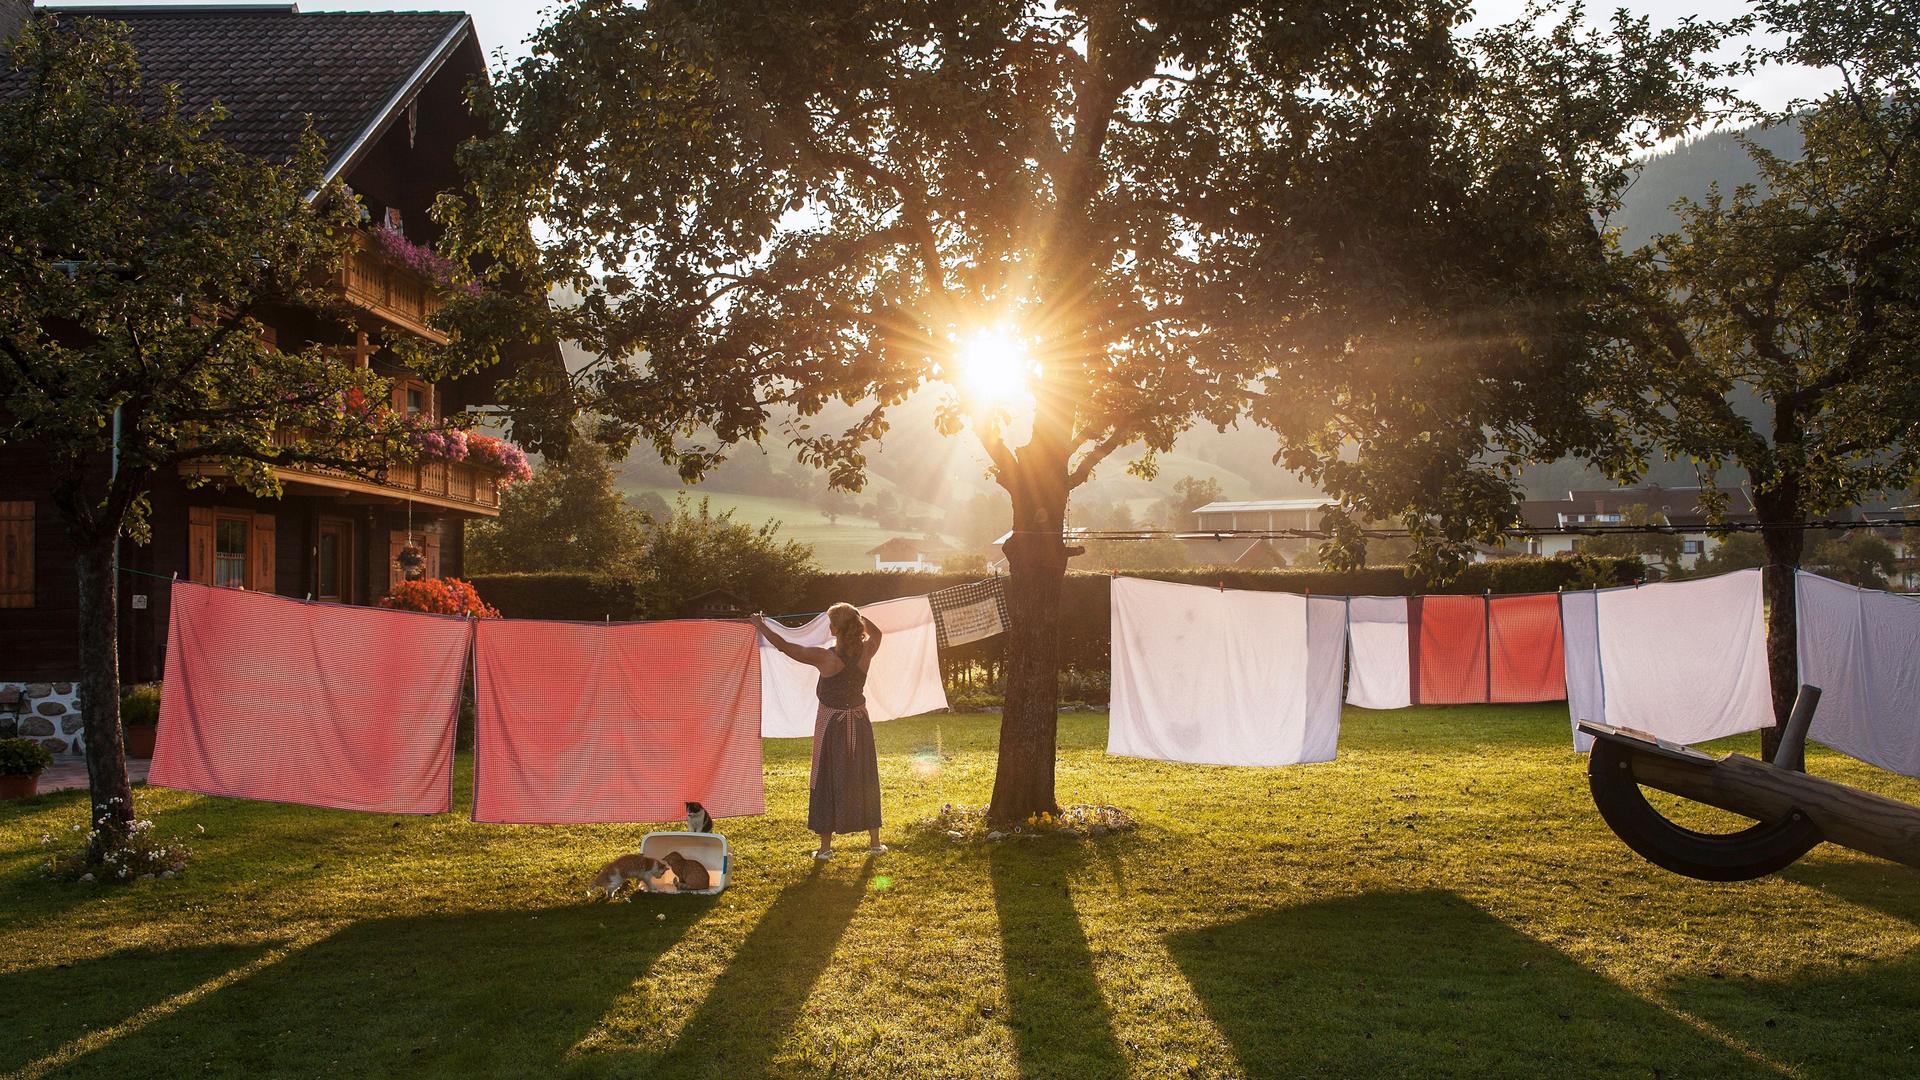 Ein Frau hängt in einem Garten Wäsche auf eine Wäscheleine. Im Hintergrund steht ein traditionelles österreichisches Haus. Die Sonne scheint und es ist warm.